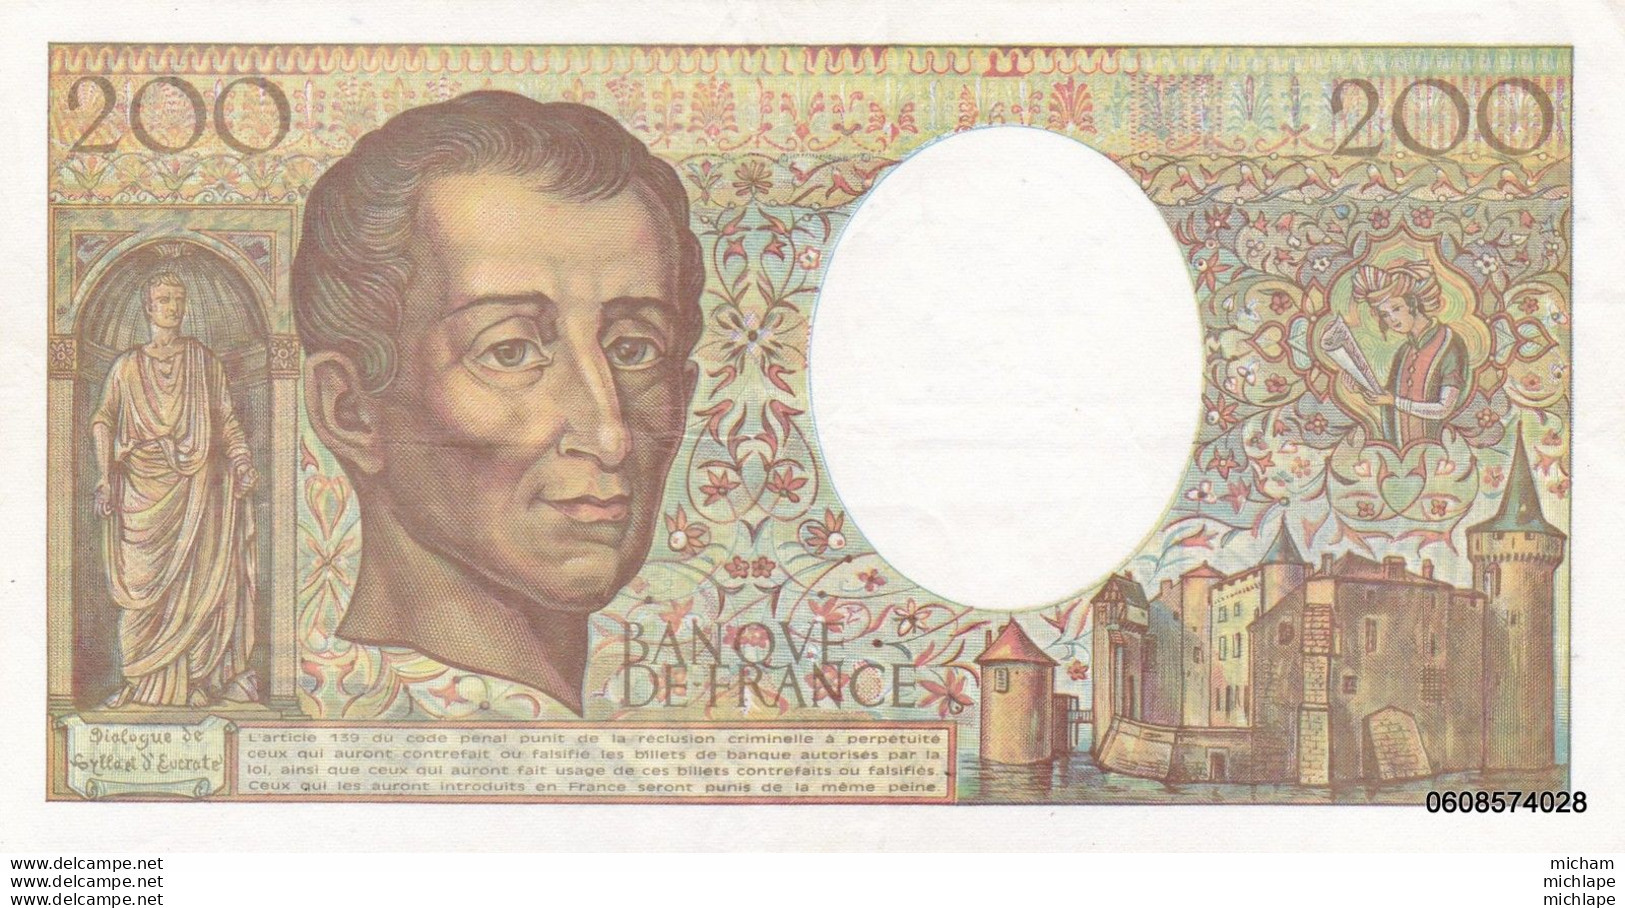 200 Francs   Montesquieu  1992  U124   TTB + - 200 F 1981-1994 ''Montesquieu''